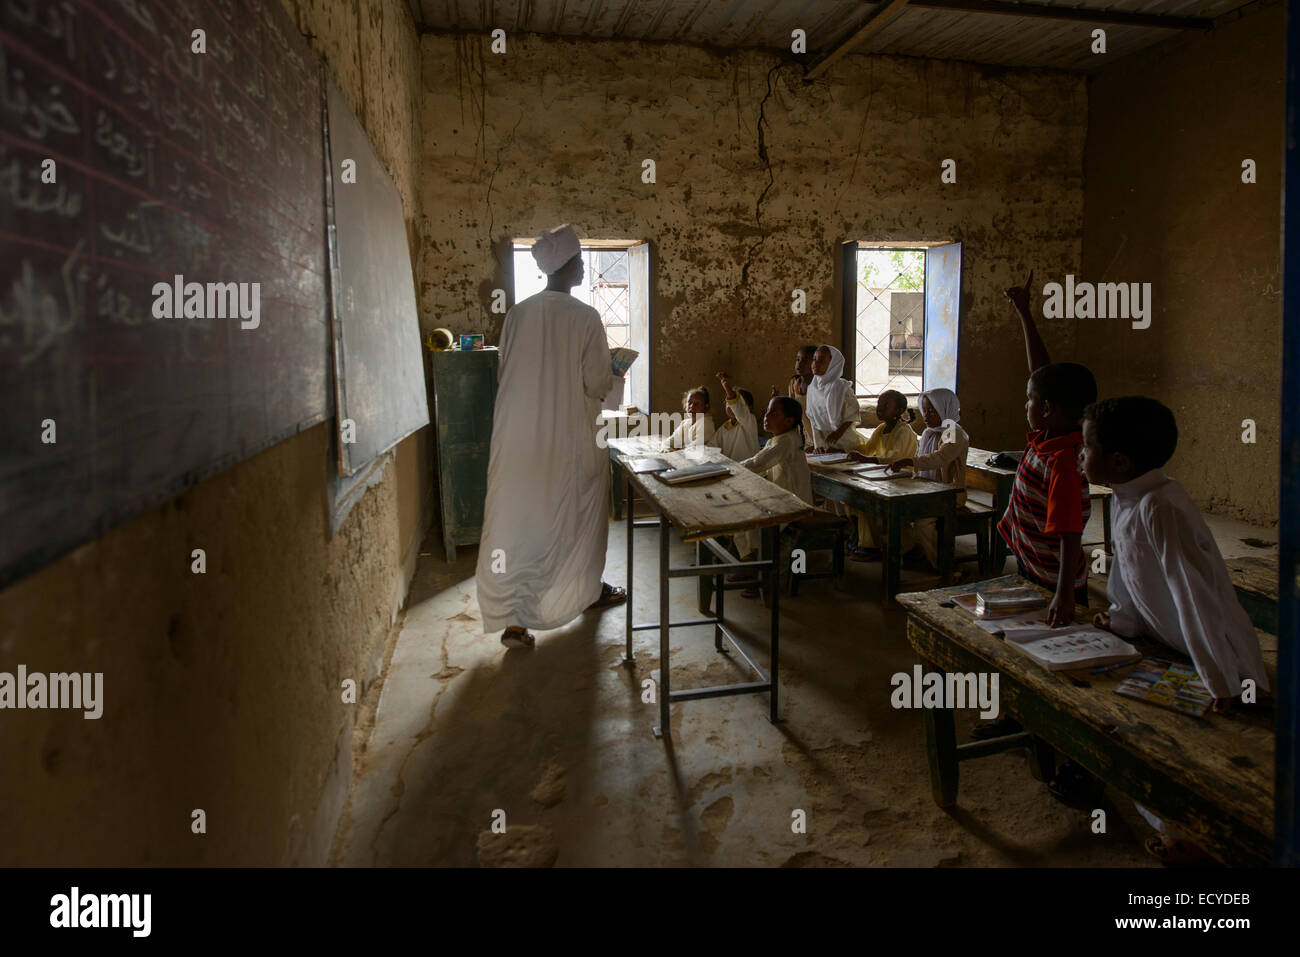 Children of a school in the Sahara desert, Sudan Stock Photo